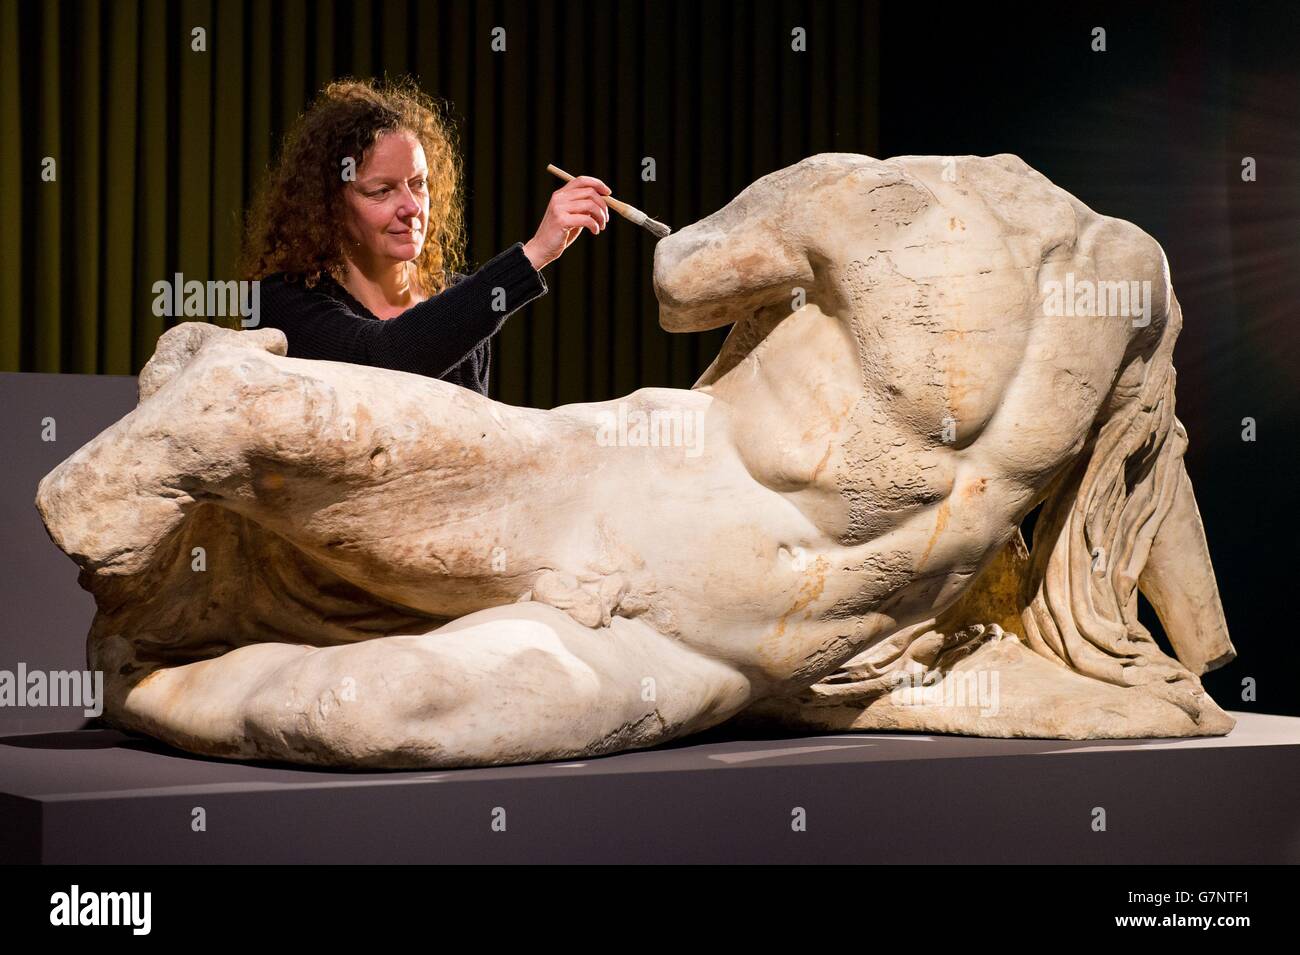 Karen Birkhoelzer, restauratrice principale, est vue par la sculpture « The River God Ilissos » de Phidias, dans le cadre de l'exposition beauté : le corps dans l'art grec ancien » au British Museum, Londres, qui doit être ouverte le 26 mars. Banque D'Images